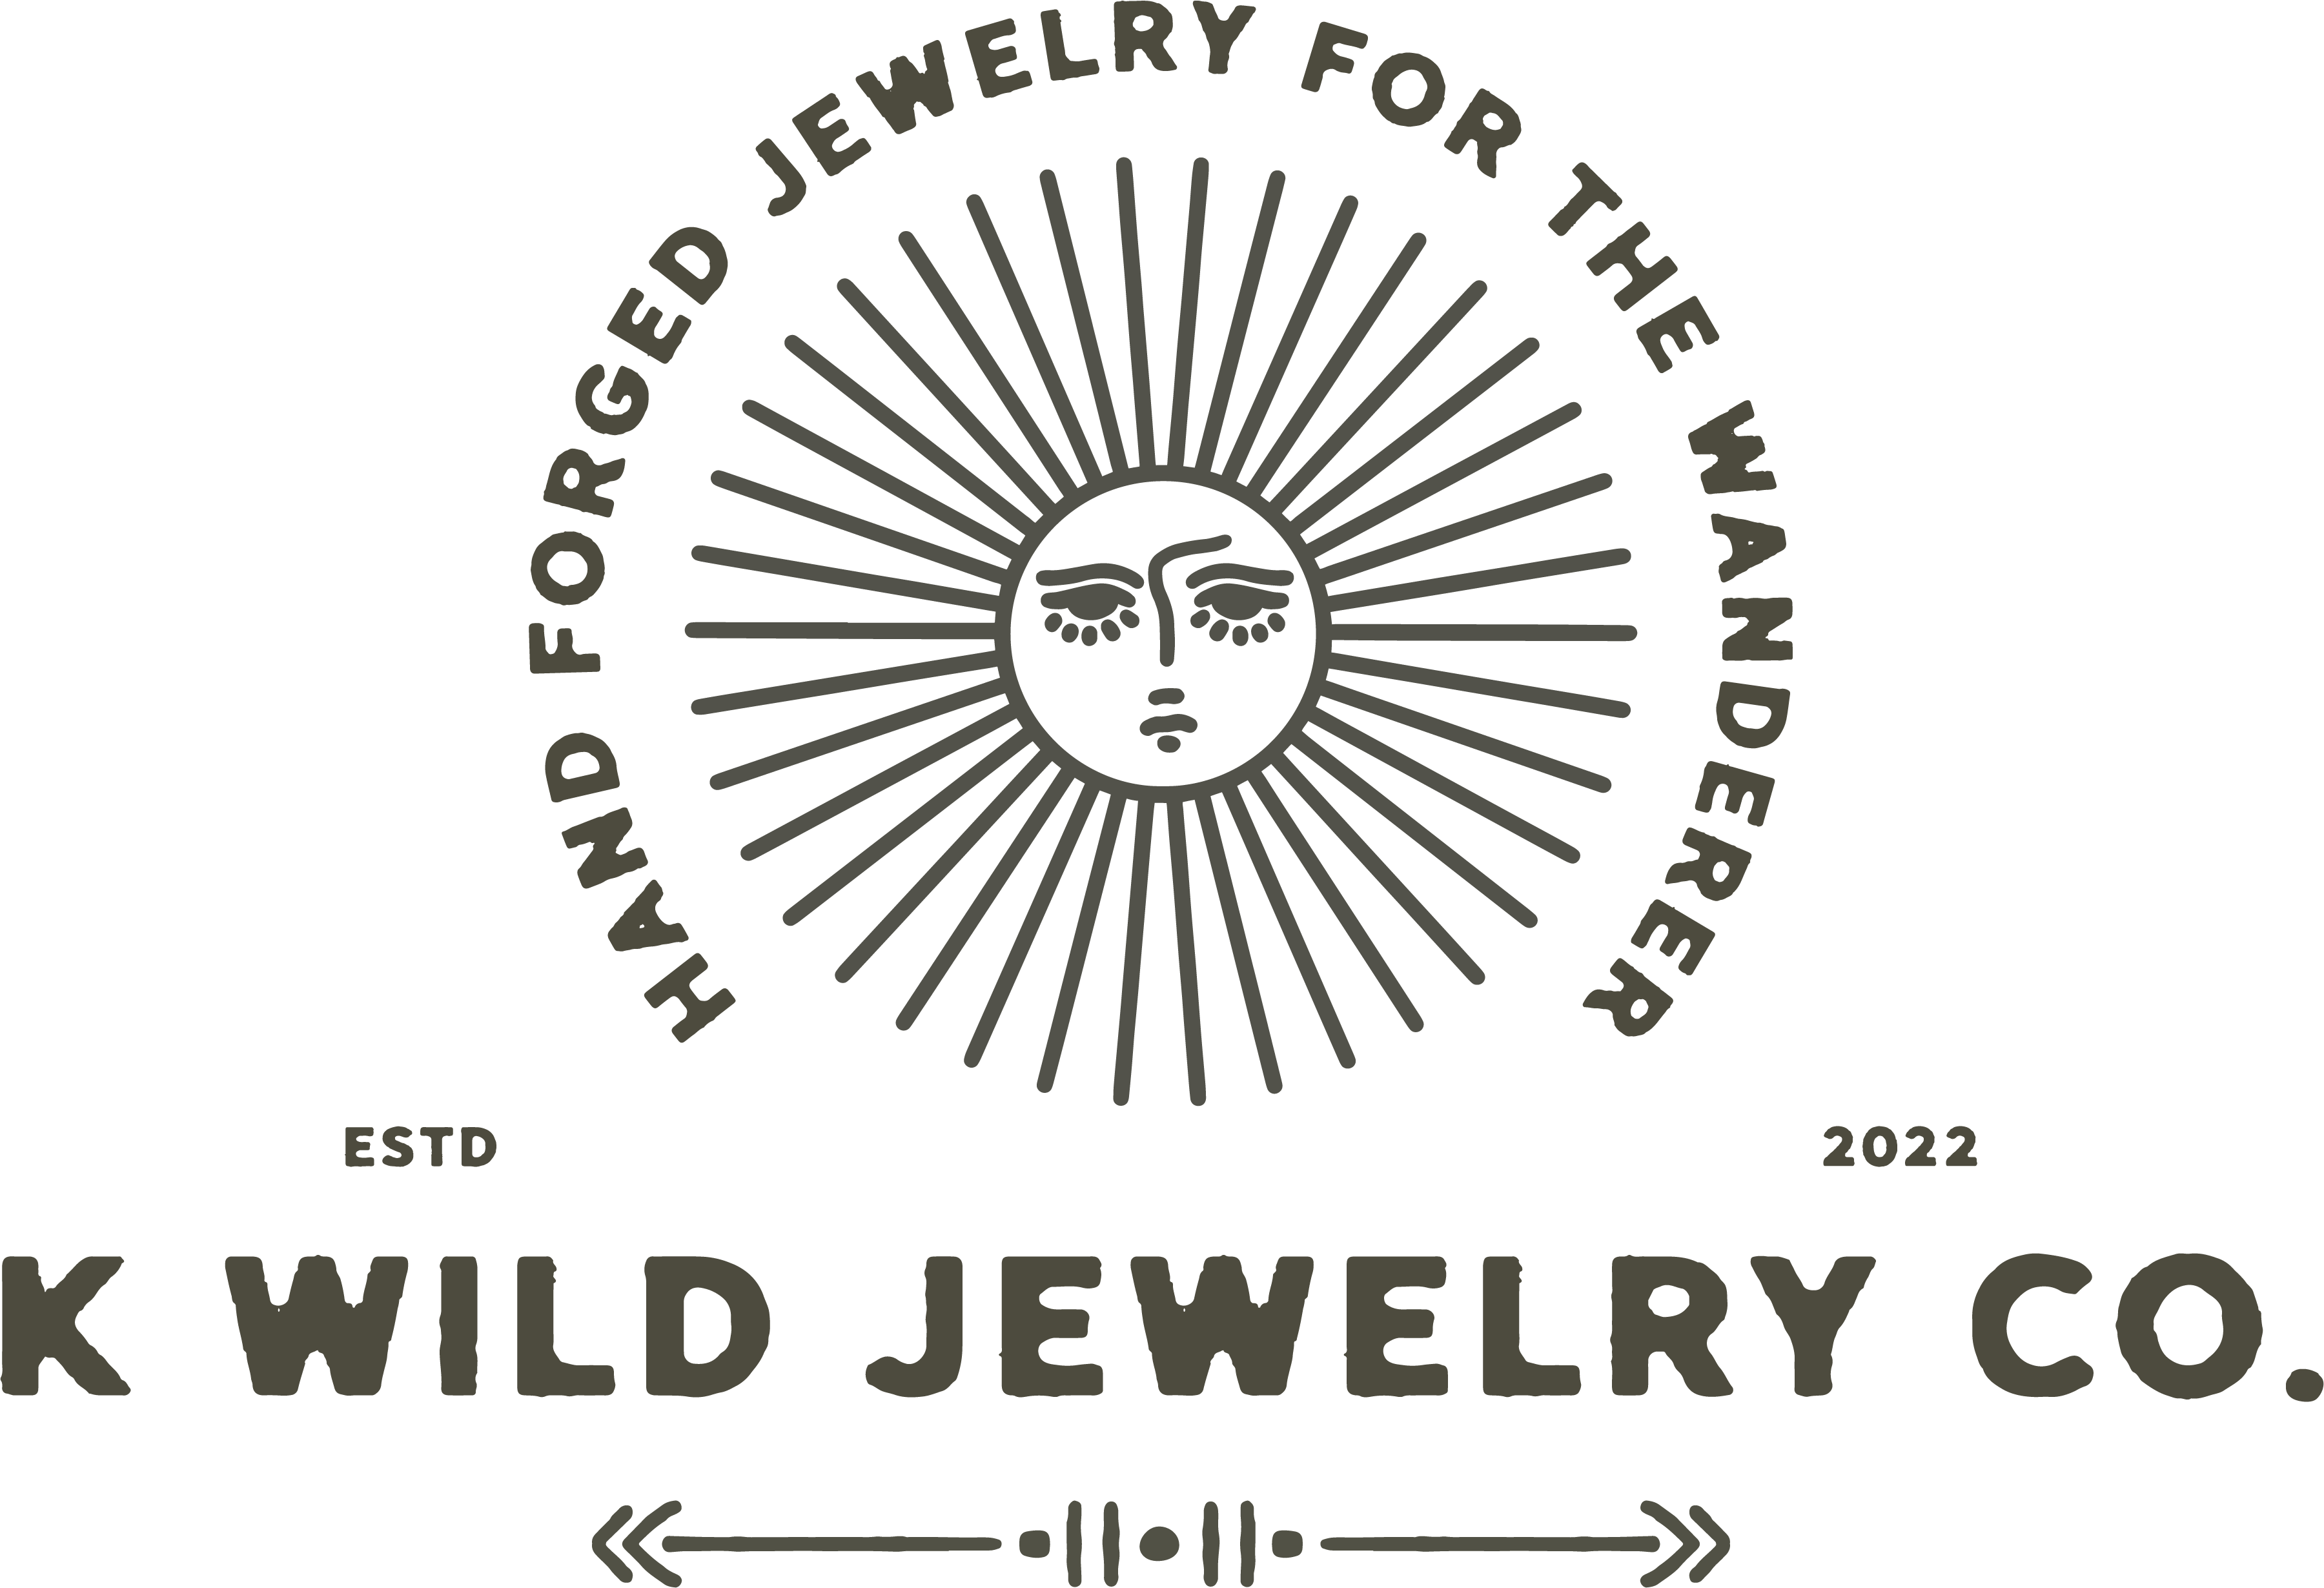 K Wild Jewelry Co 